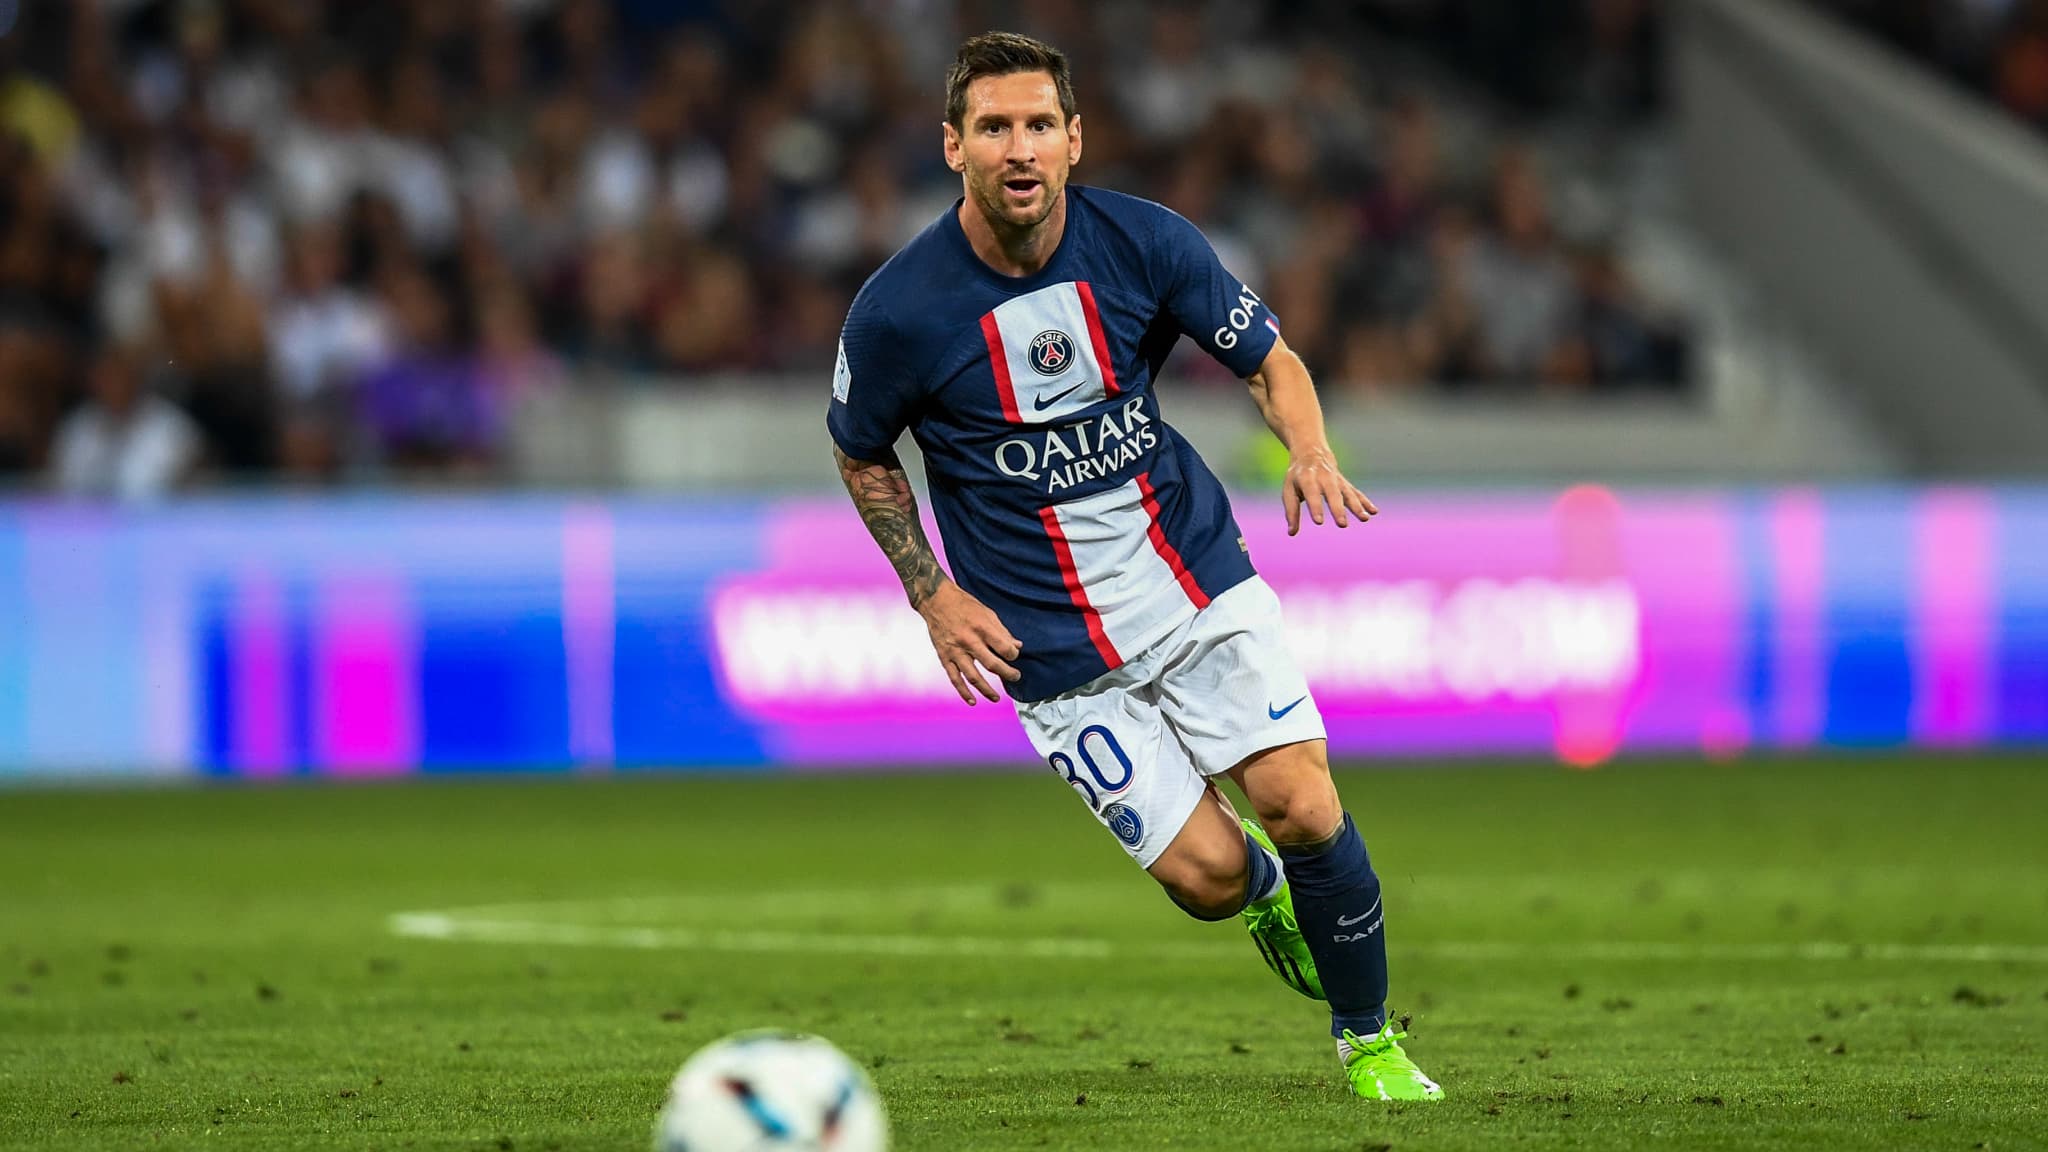 Diretta – Paris Saint-Germain: Messi torna agli allenamenti di gruppo prima di affrontare l’OM